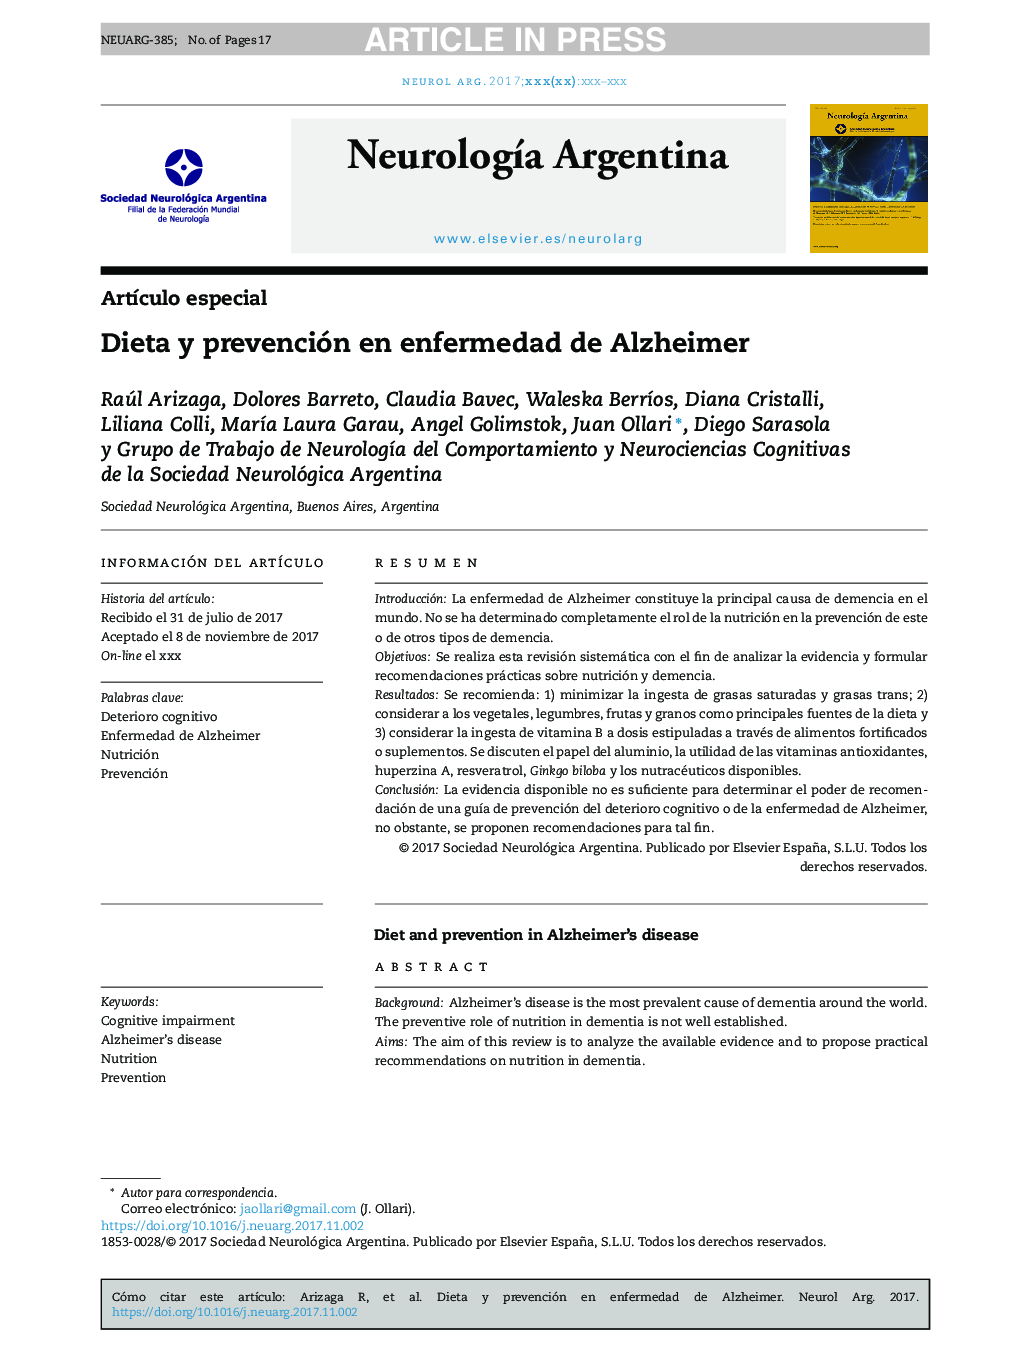 Dieta y prevención en enfermedad de Alzheimer